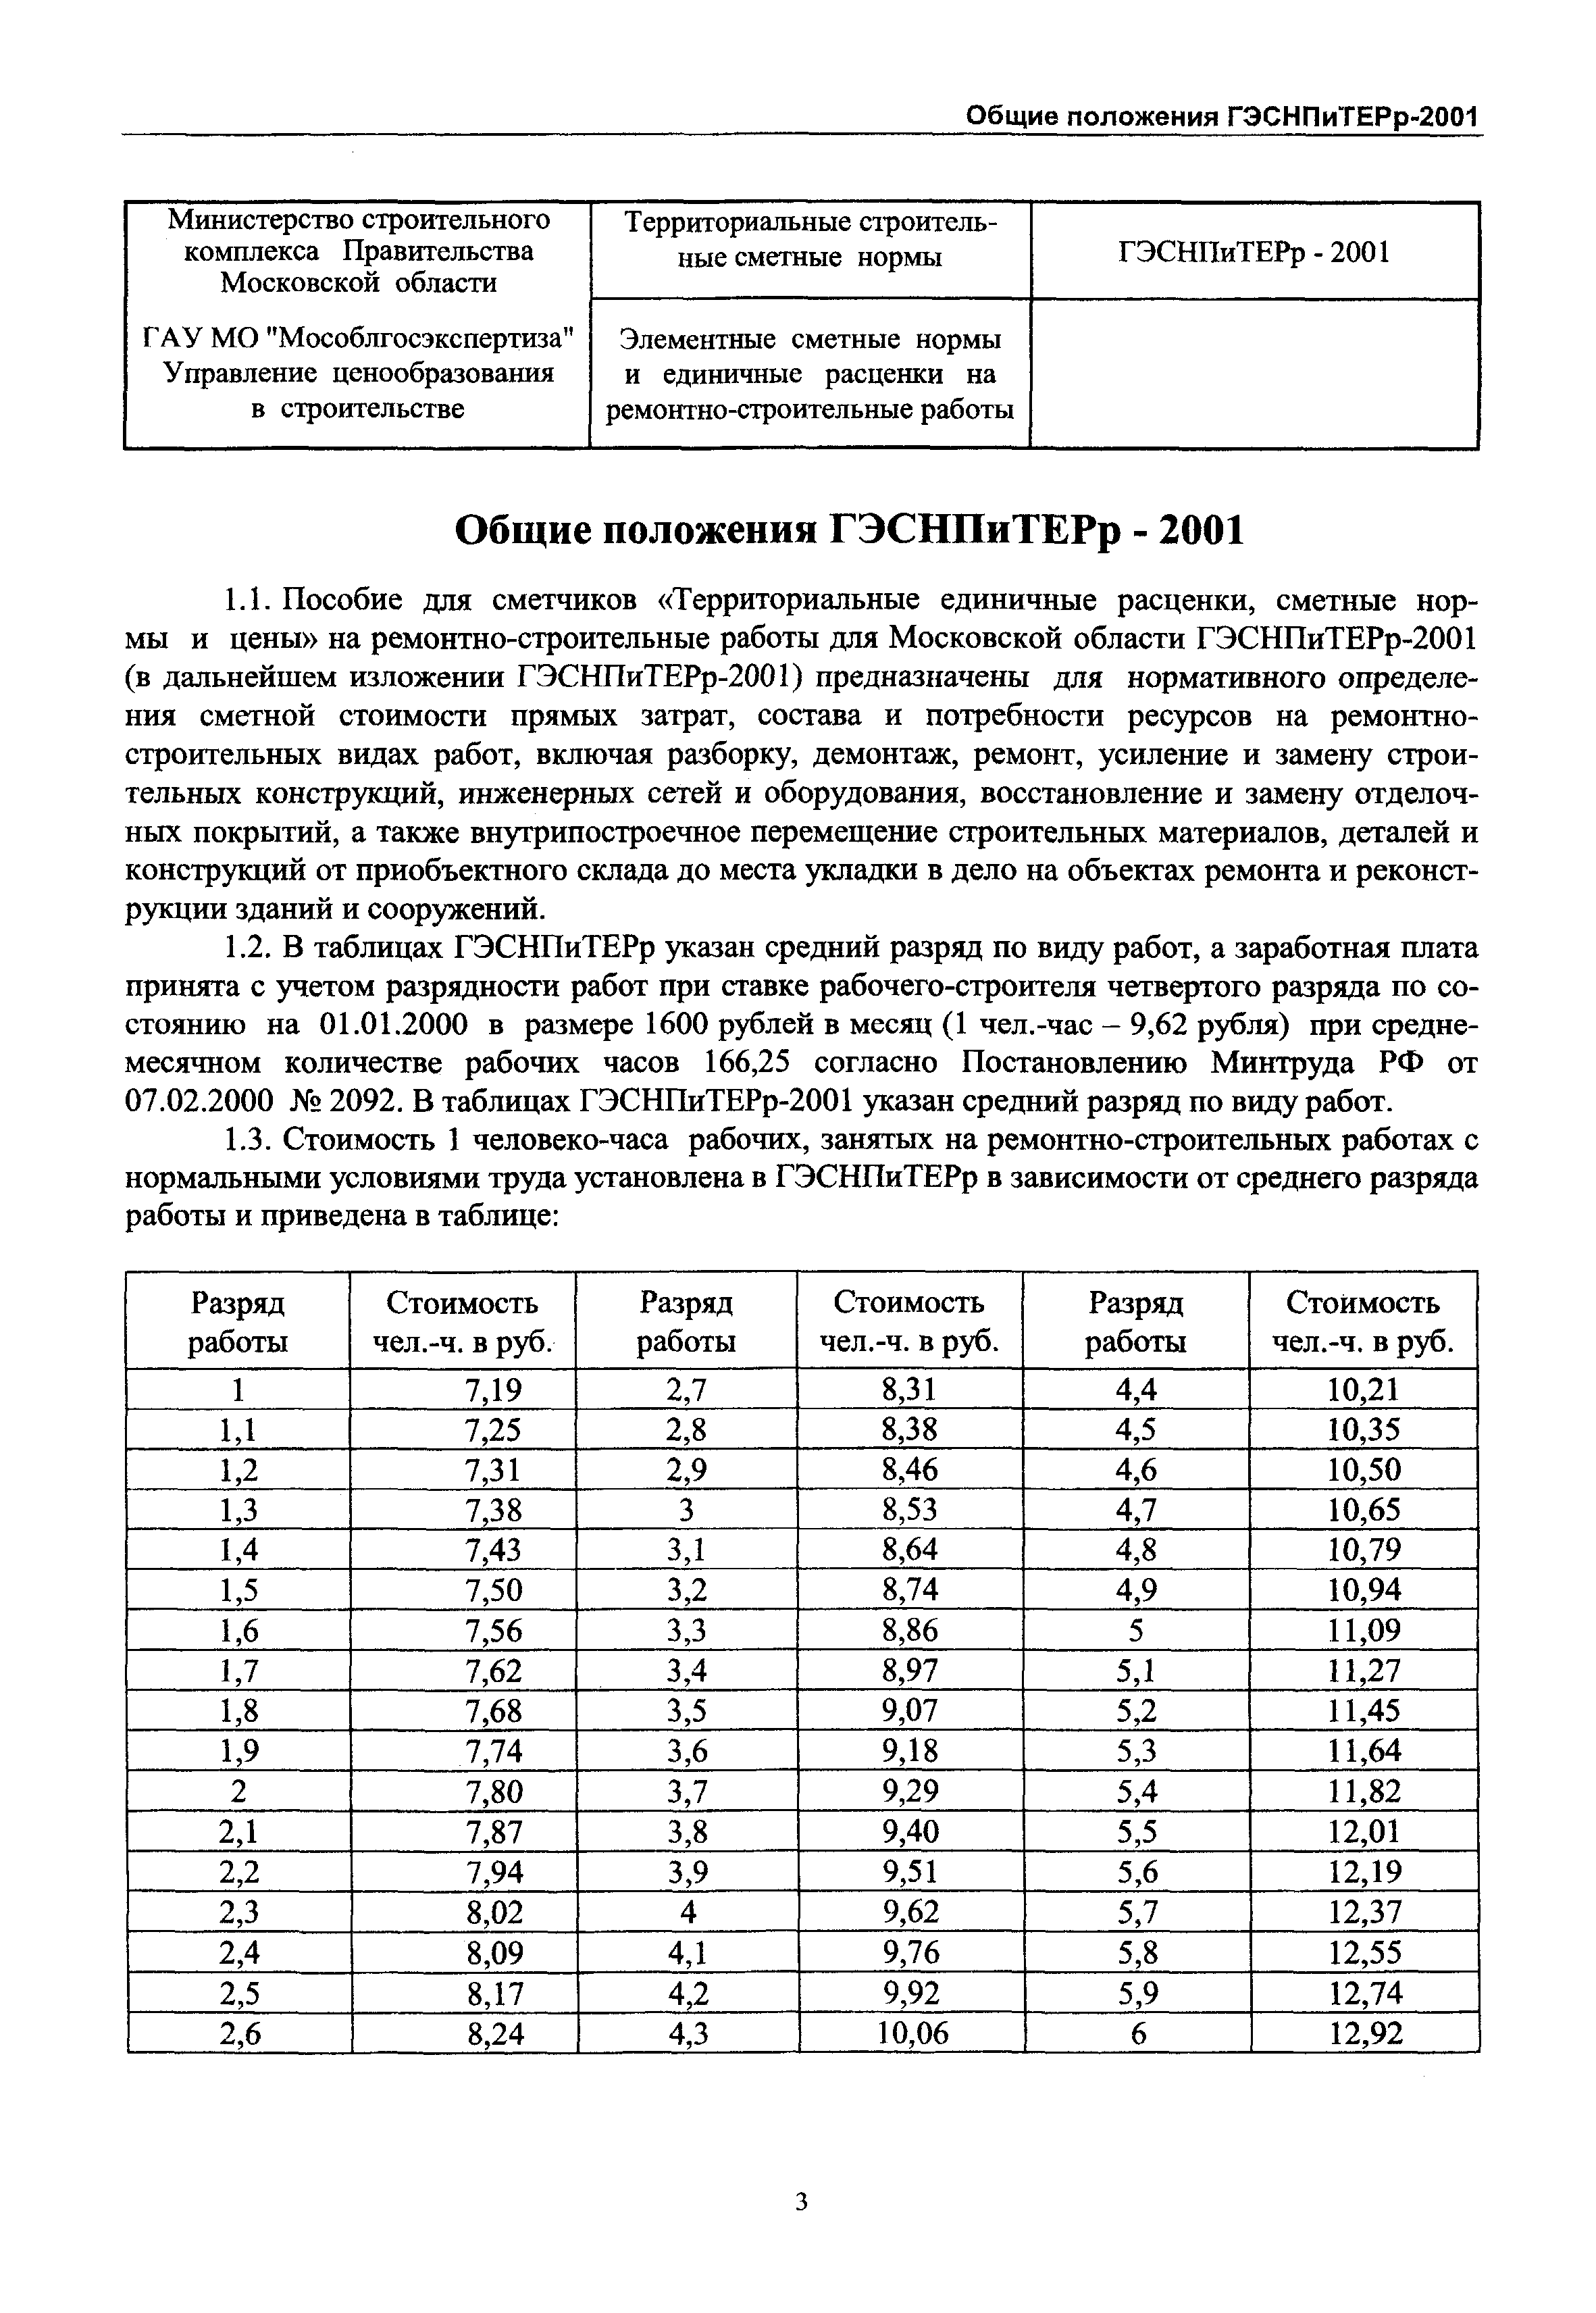 ГЭСНПиТЕРр 2001-51 Московской области